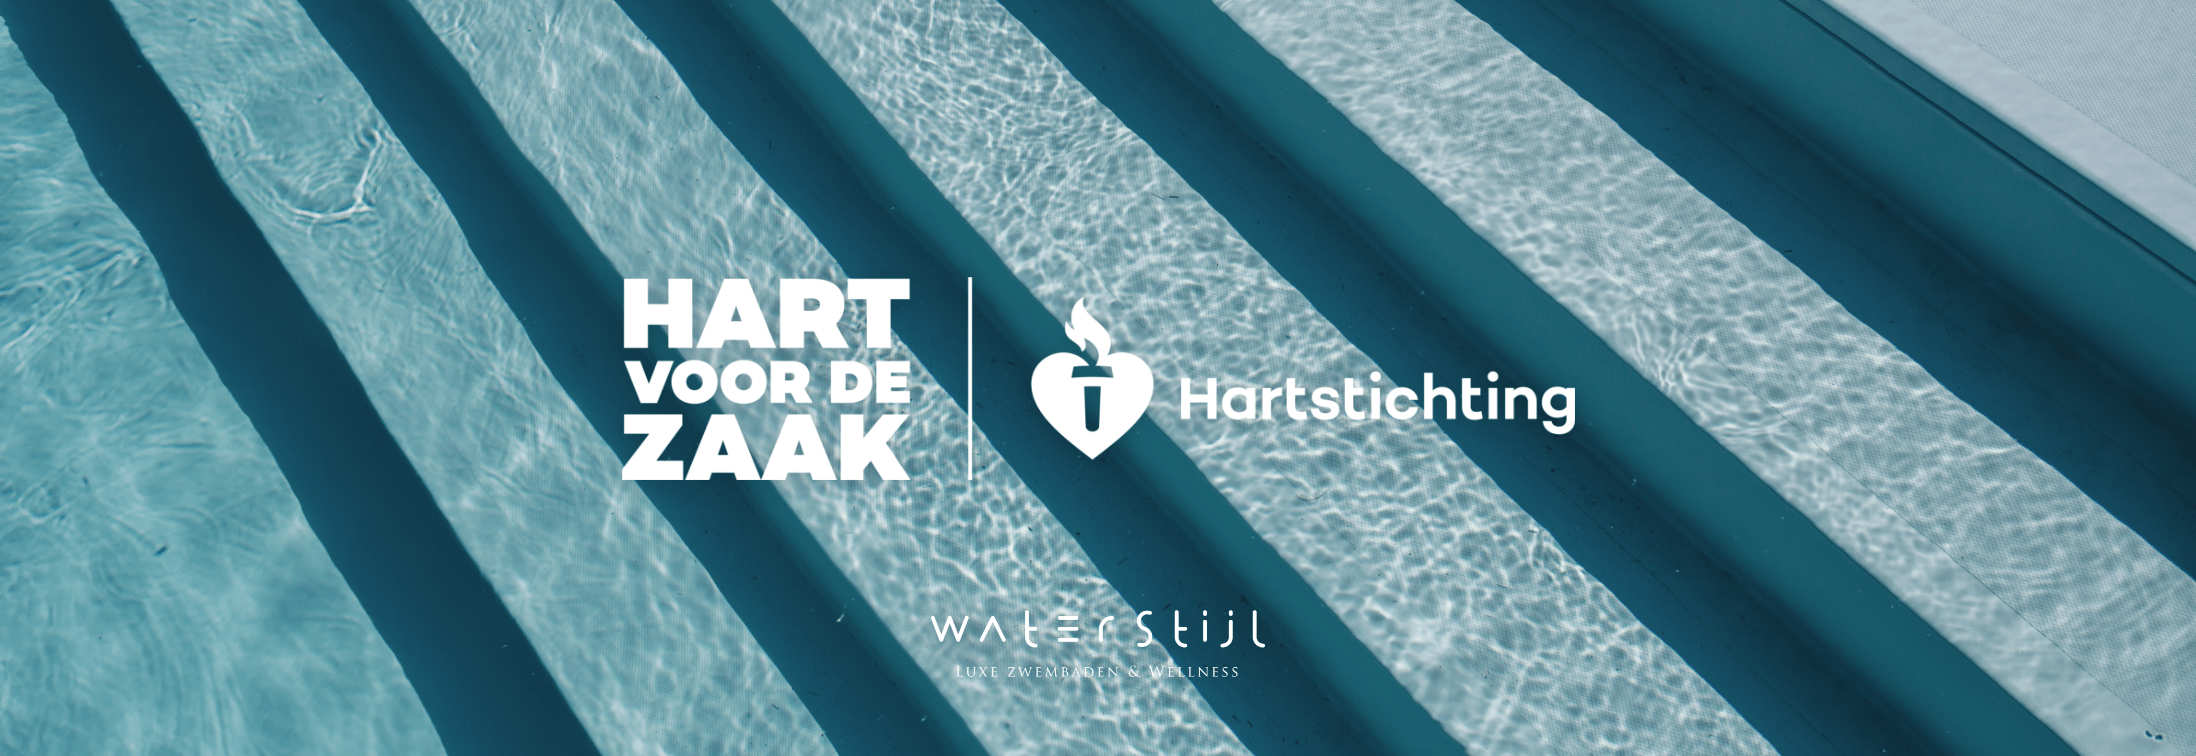 Waterstijl Hart voor de Zaak partnership